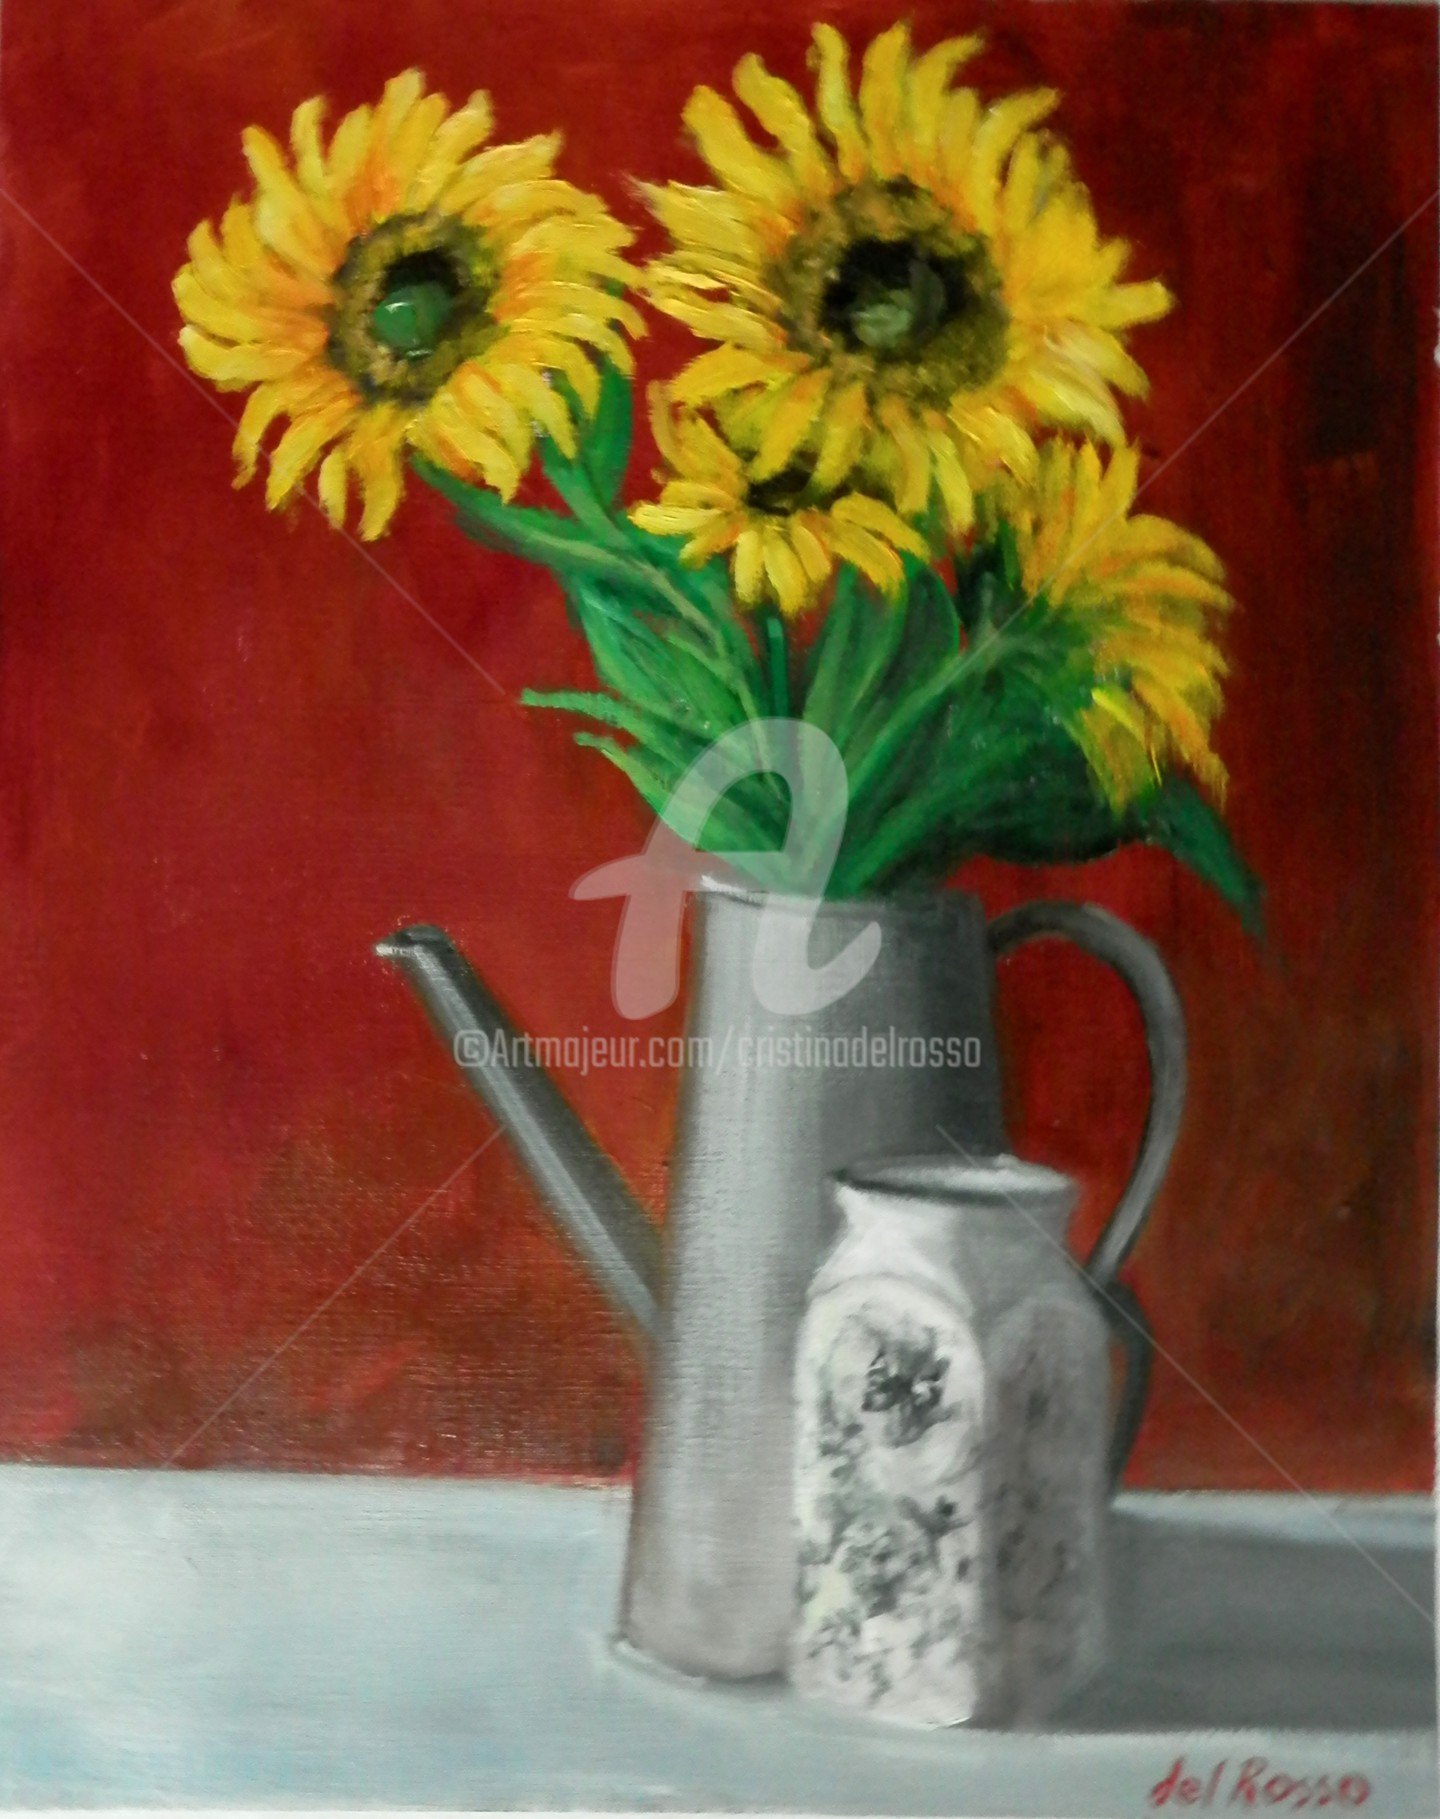 Cristina Del Rosso - Girasoles (Sunflowers. Atelier's Sketch)